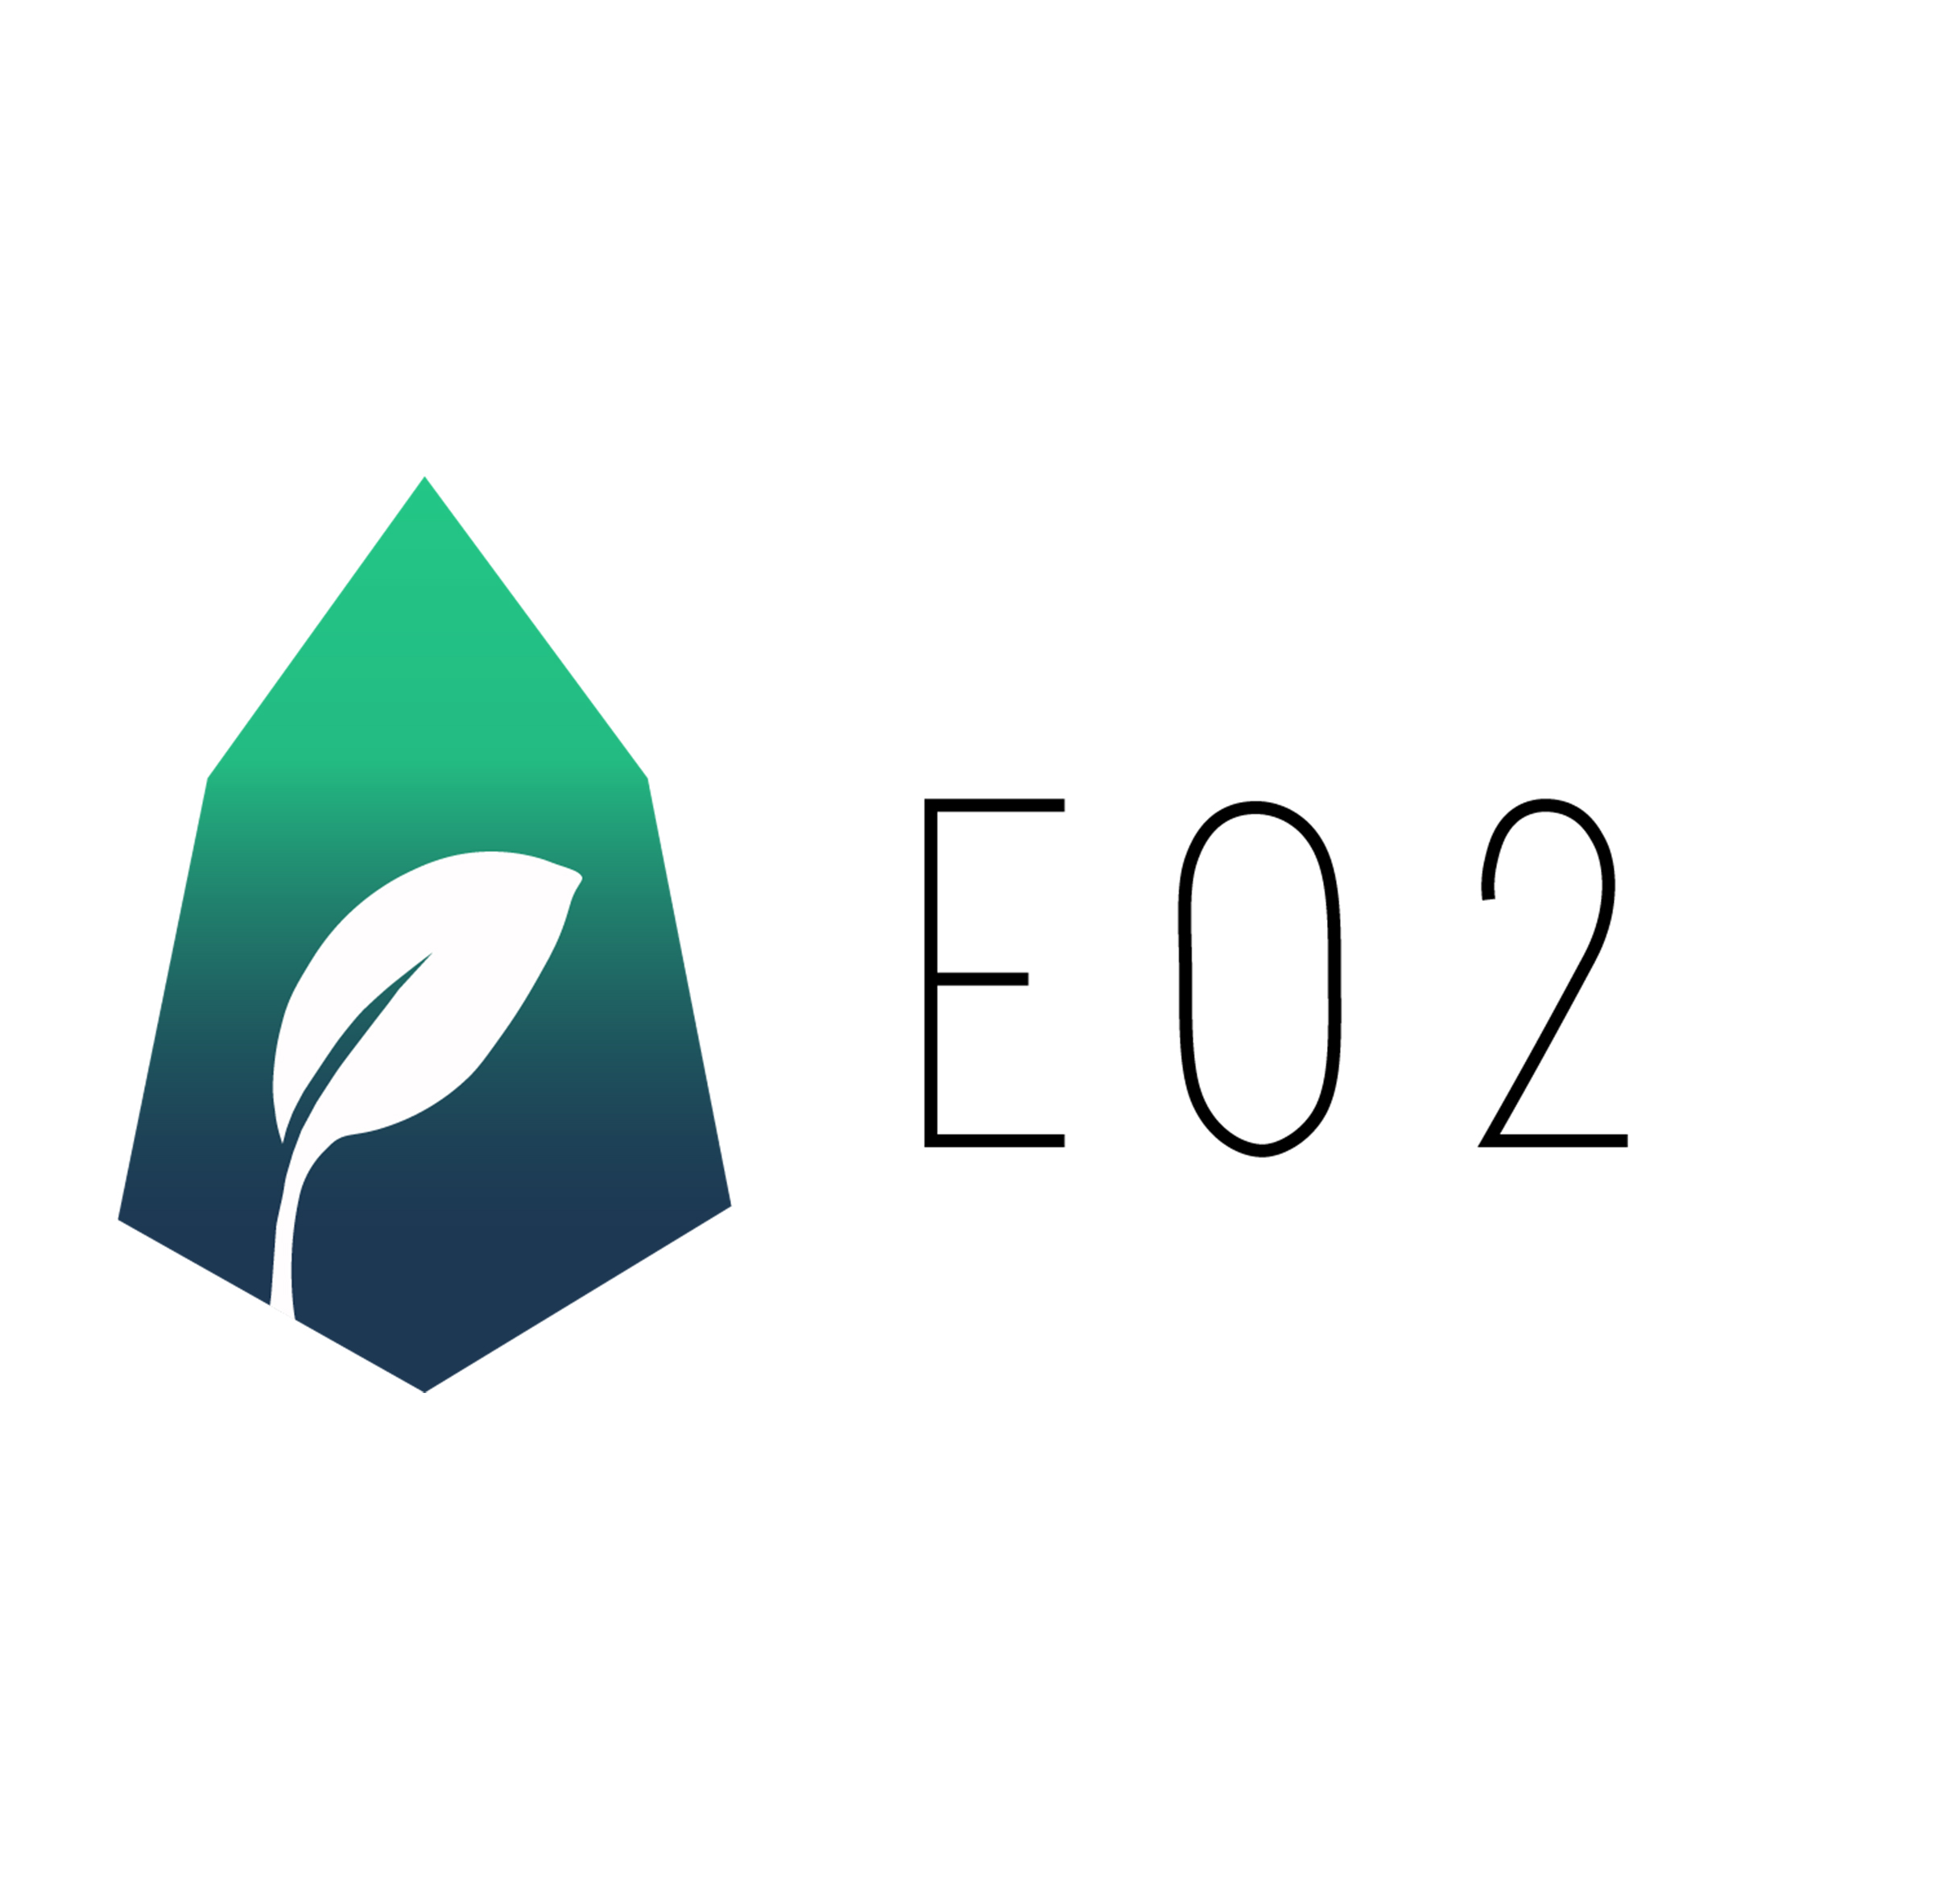 Création d'un site internet pour EO2 par DGcommunity - Damien Guiral